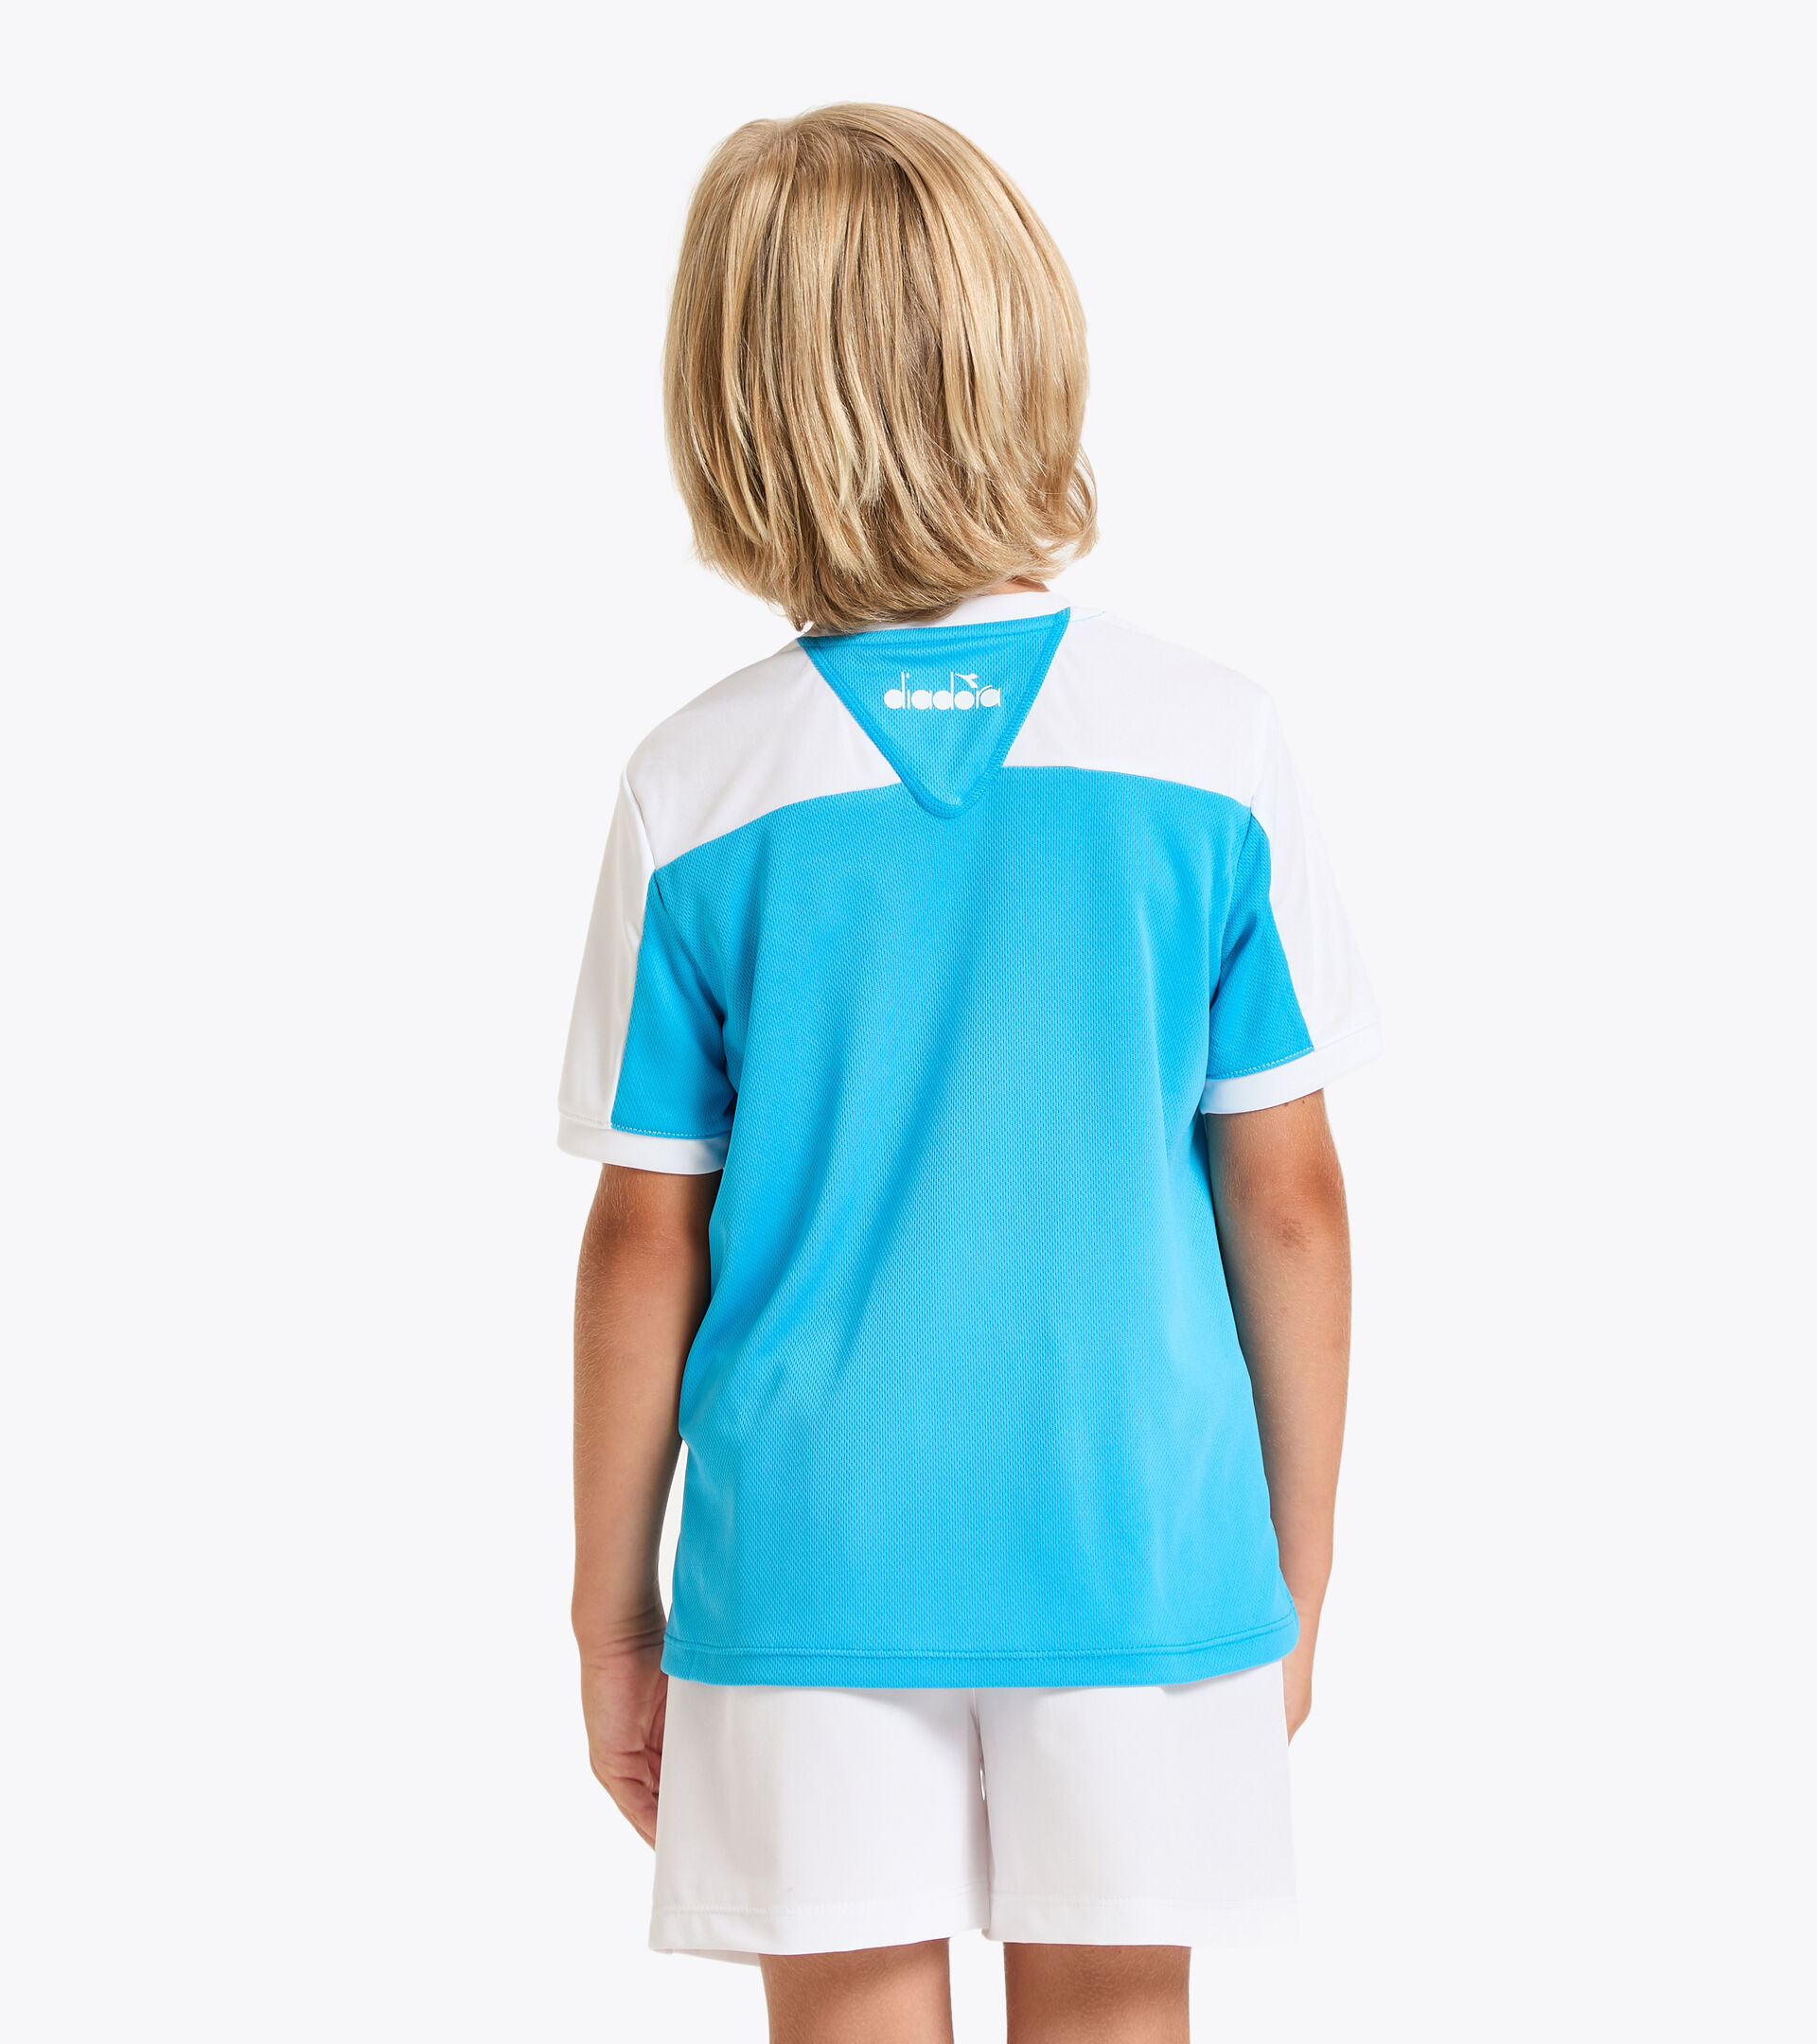 Tennis T-shirt - Junior J. T-SHIRT COURT ROYAL FLUO - Diadora